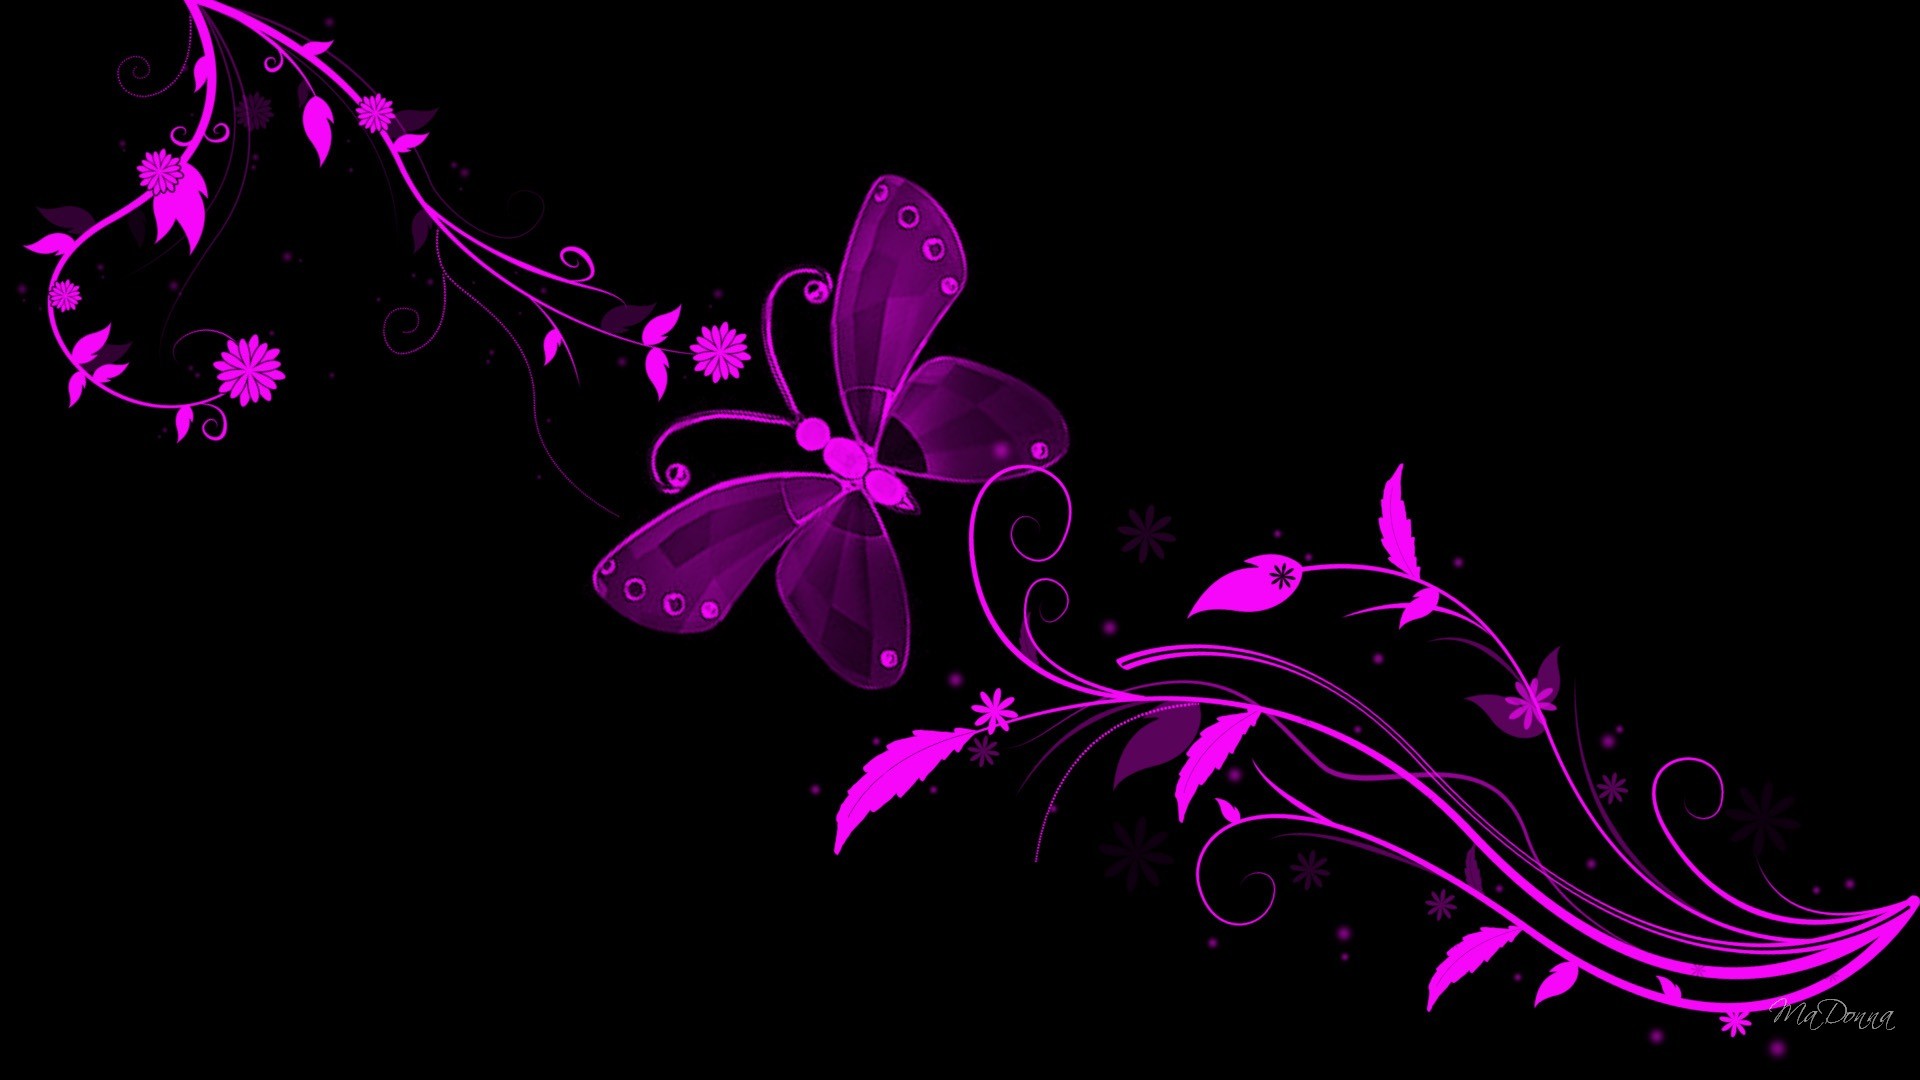 1920x1080 ... Backgrounds ... purple butterfly wallpaper - HD Desktop Wallpapers | 4k  HD ...